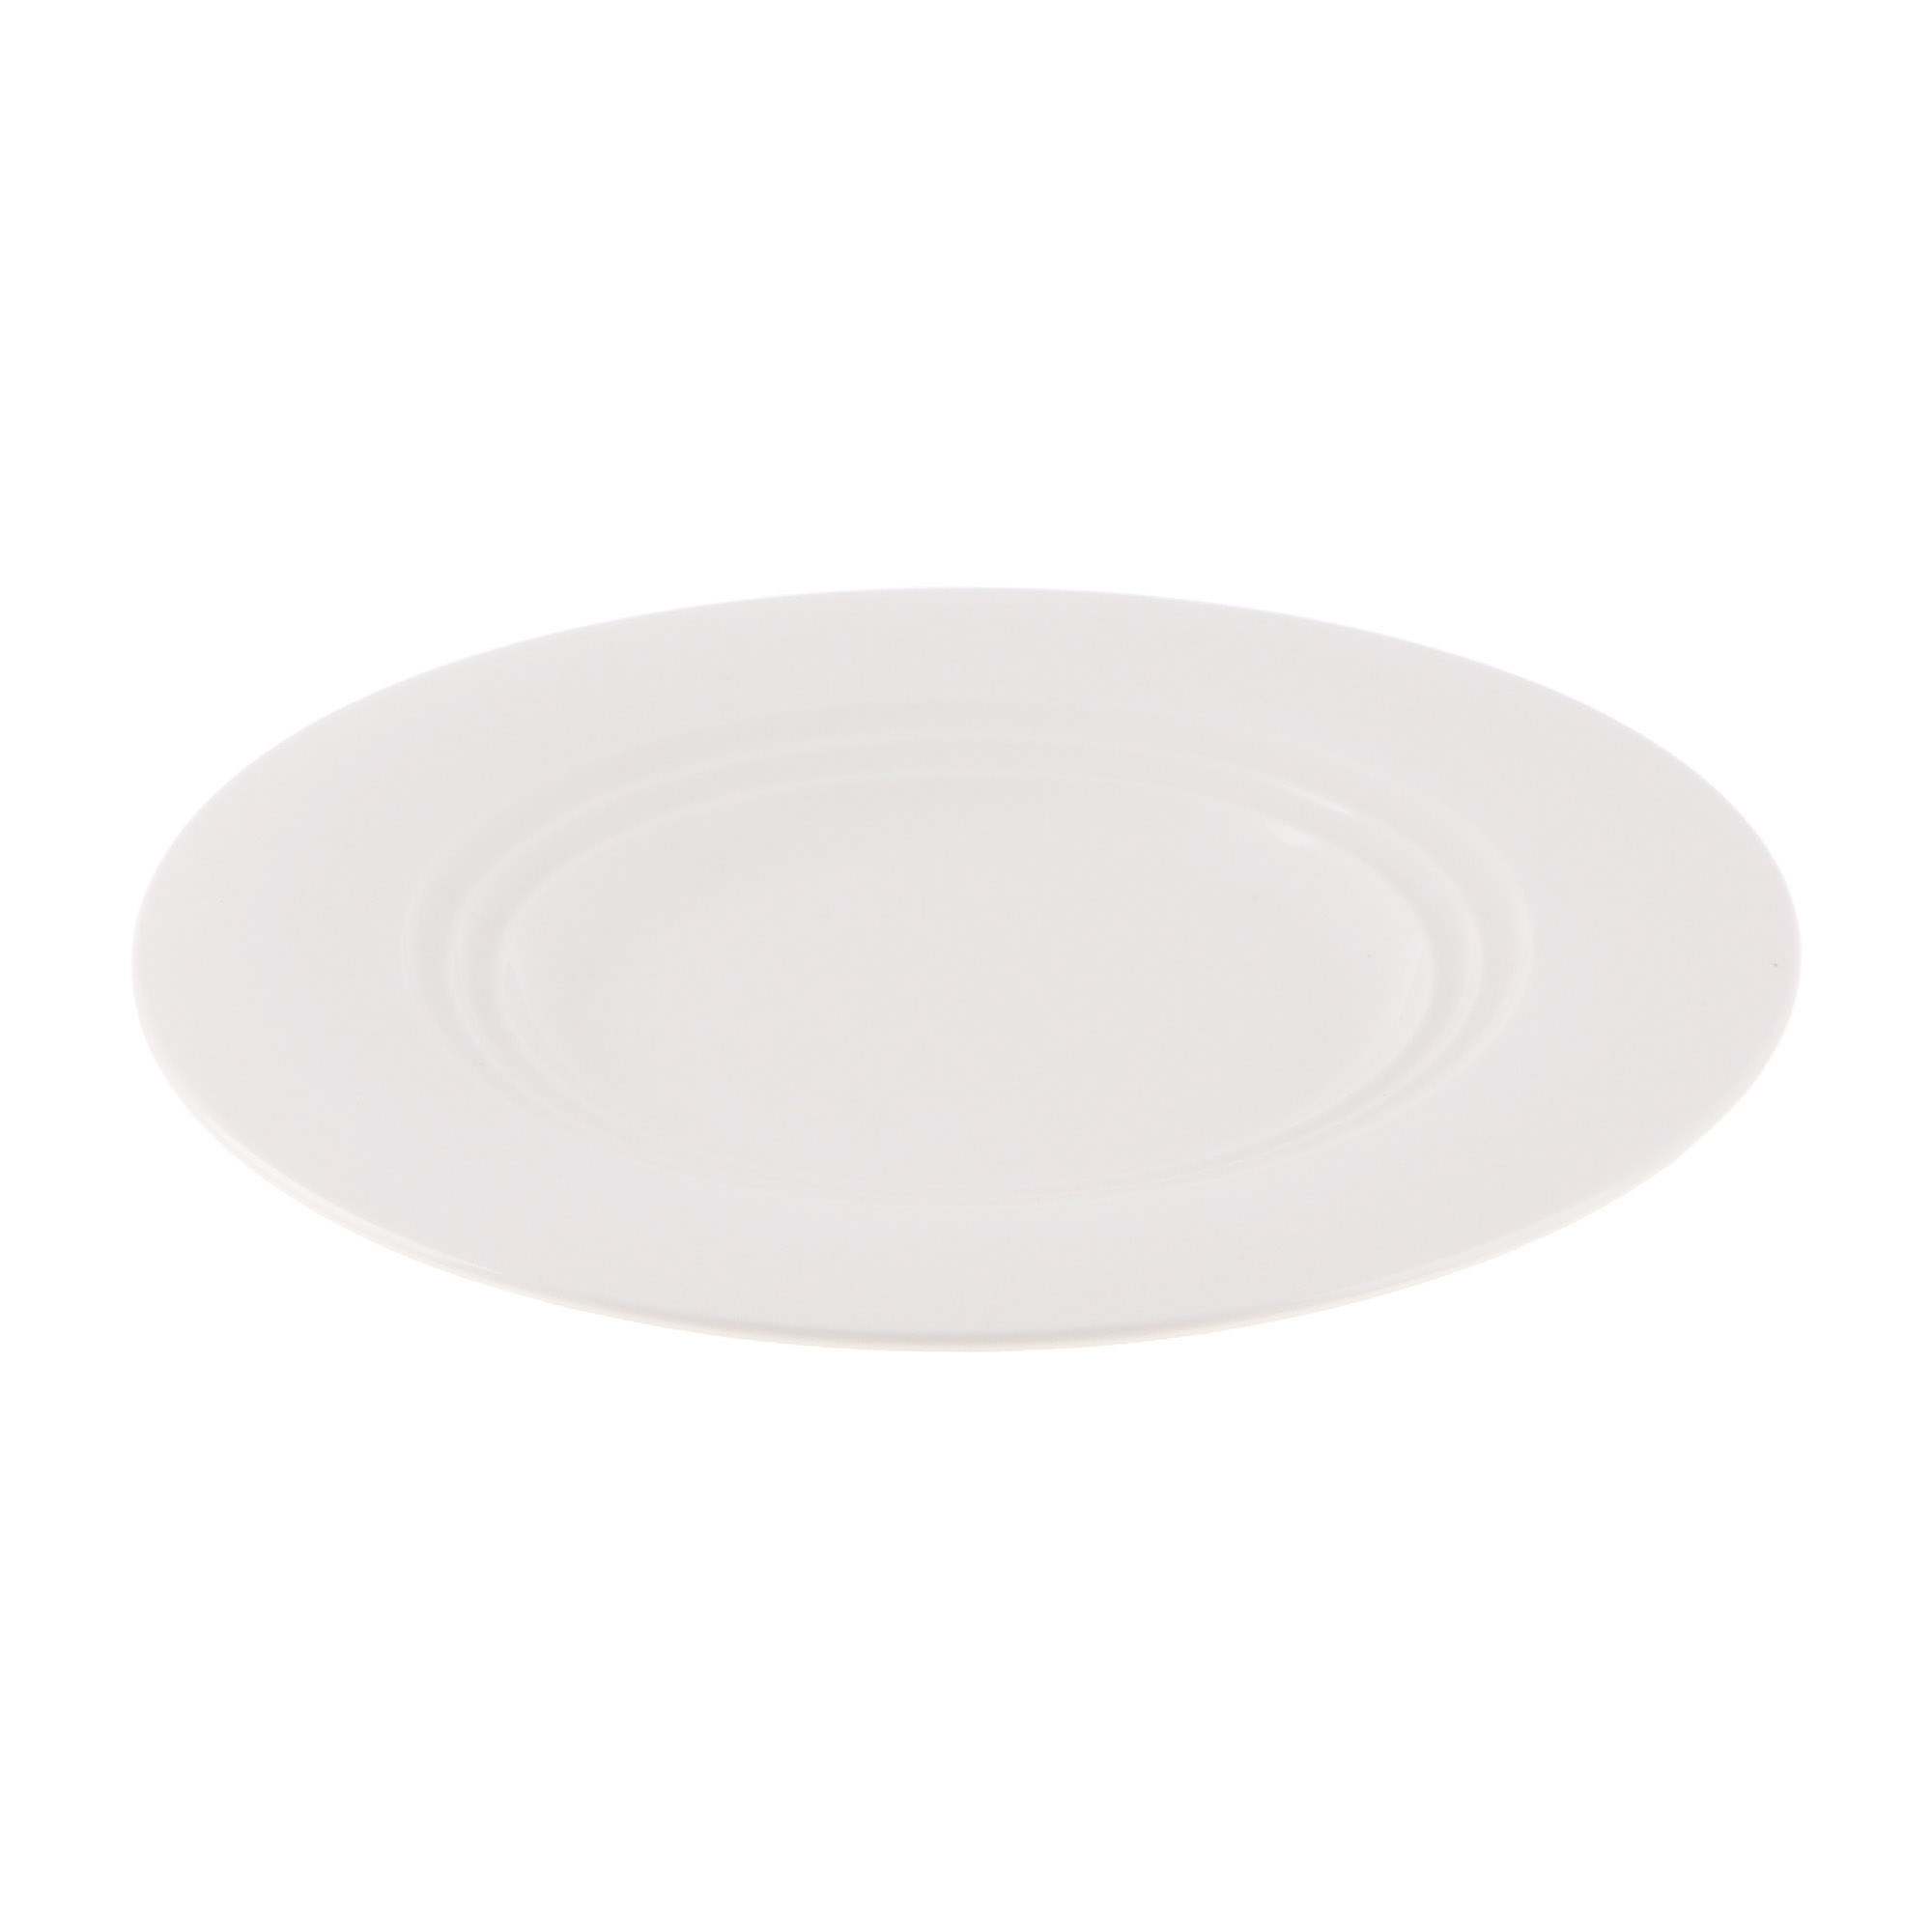 Тарелка Cameo Concentrics фарфор 21 см тарелка cameo slanted oval 24 см